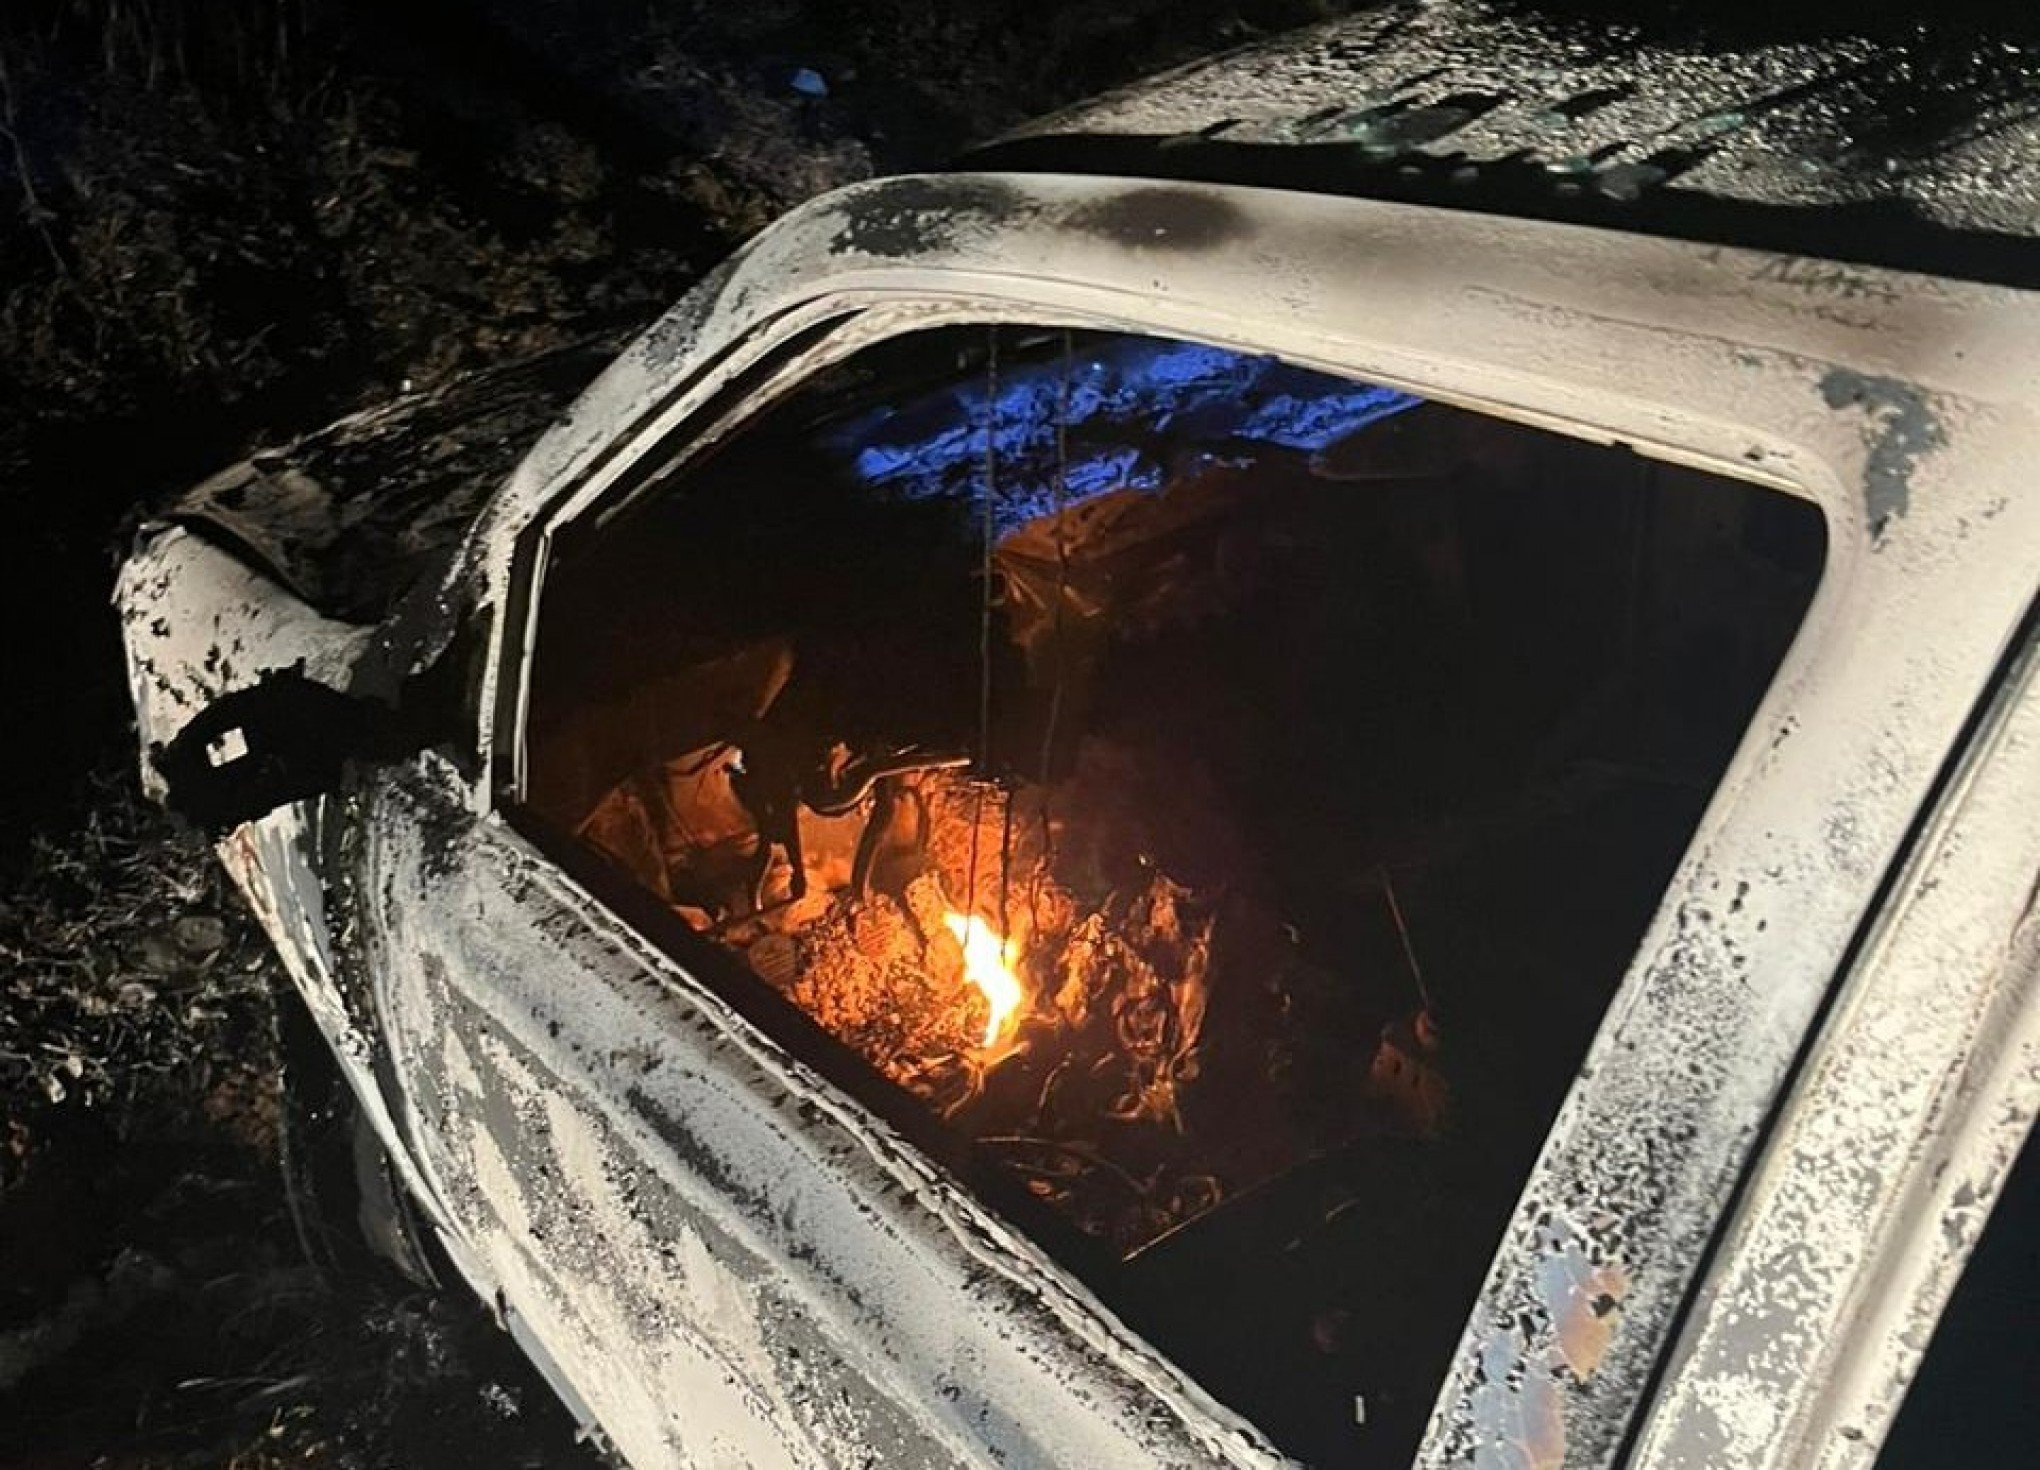 Carro encontrado queimado em Portão tem ligação com execução de homem na frente da namorada